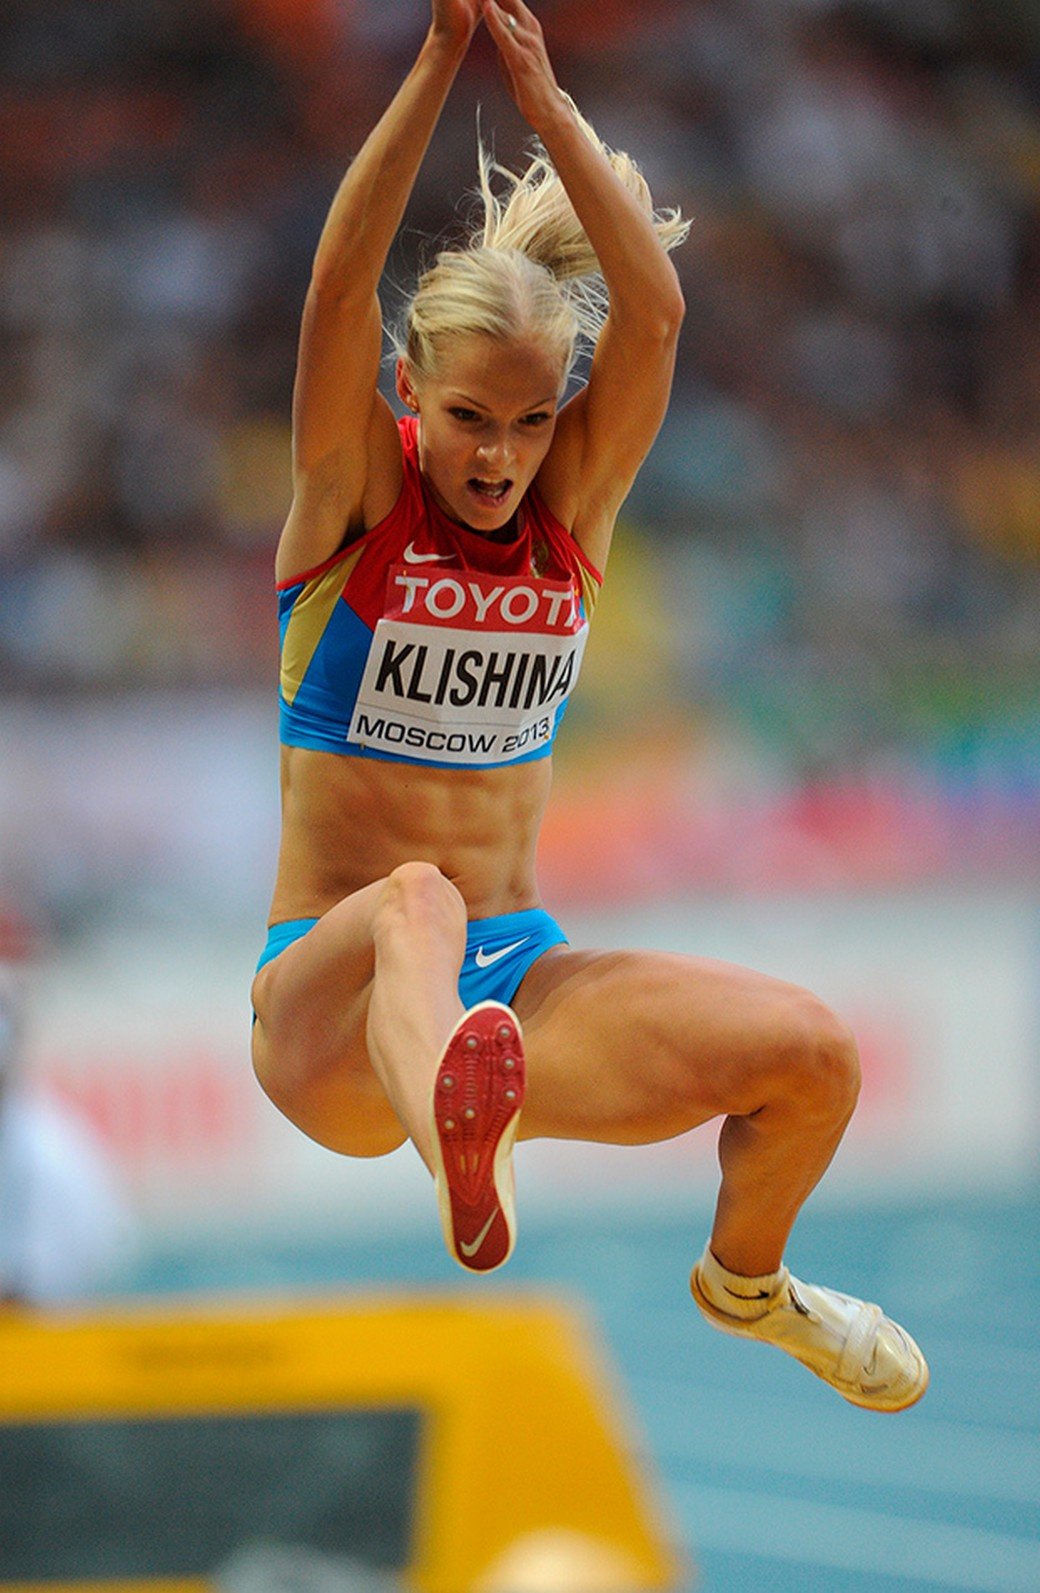 1040x1593, 237 Kb / Дарья Клишина, спорт, прыжок, легкая атлетика, блондинка